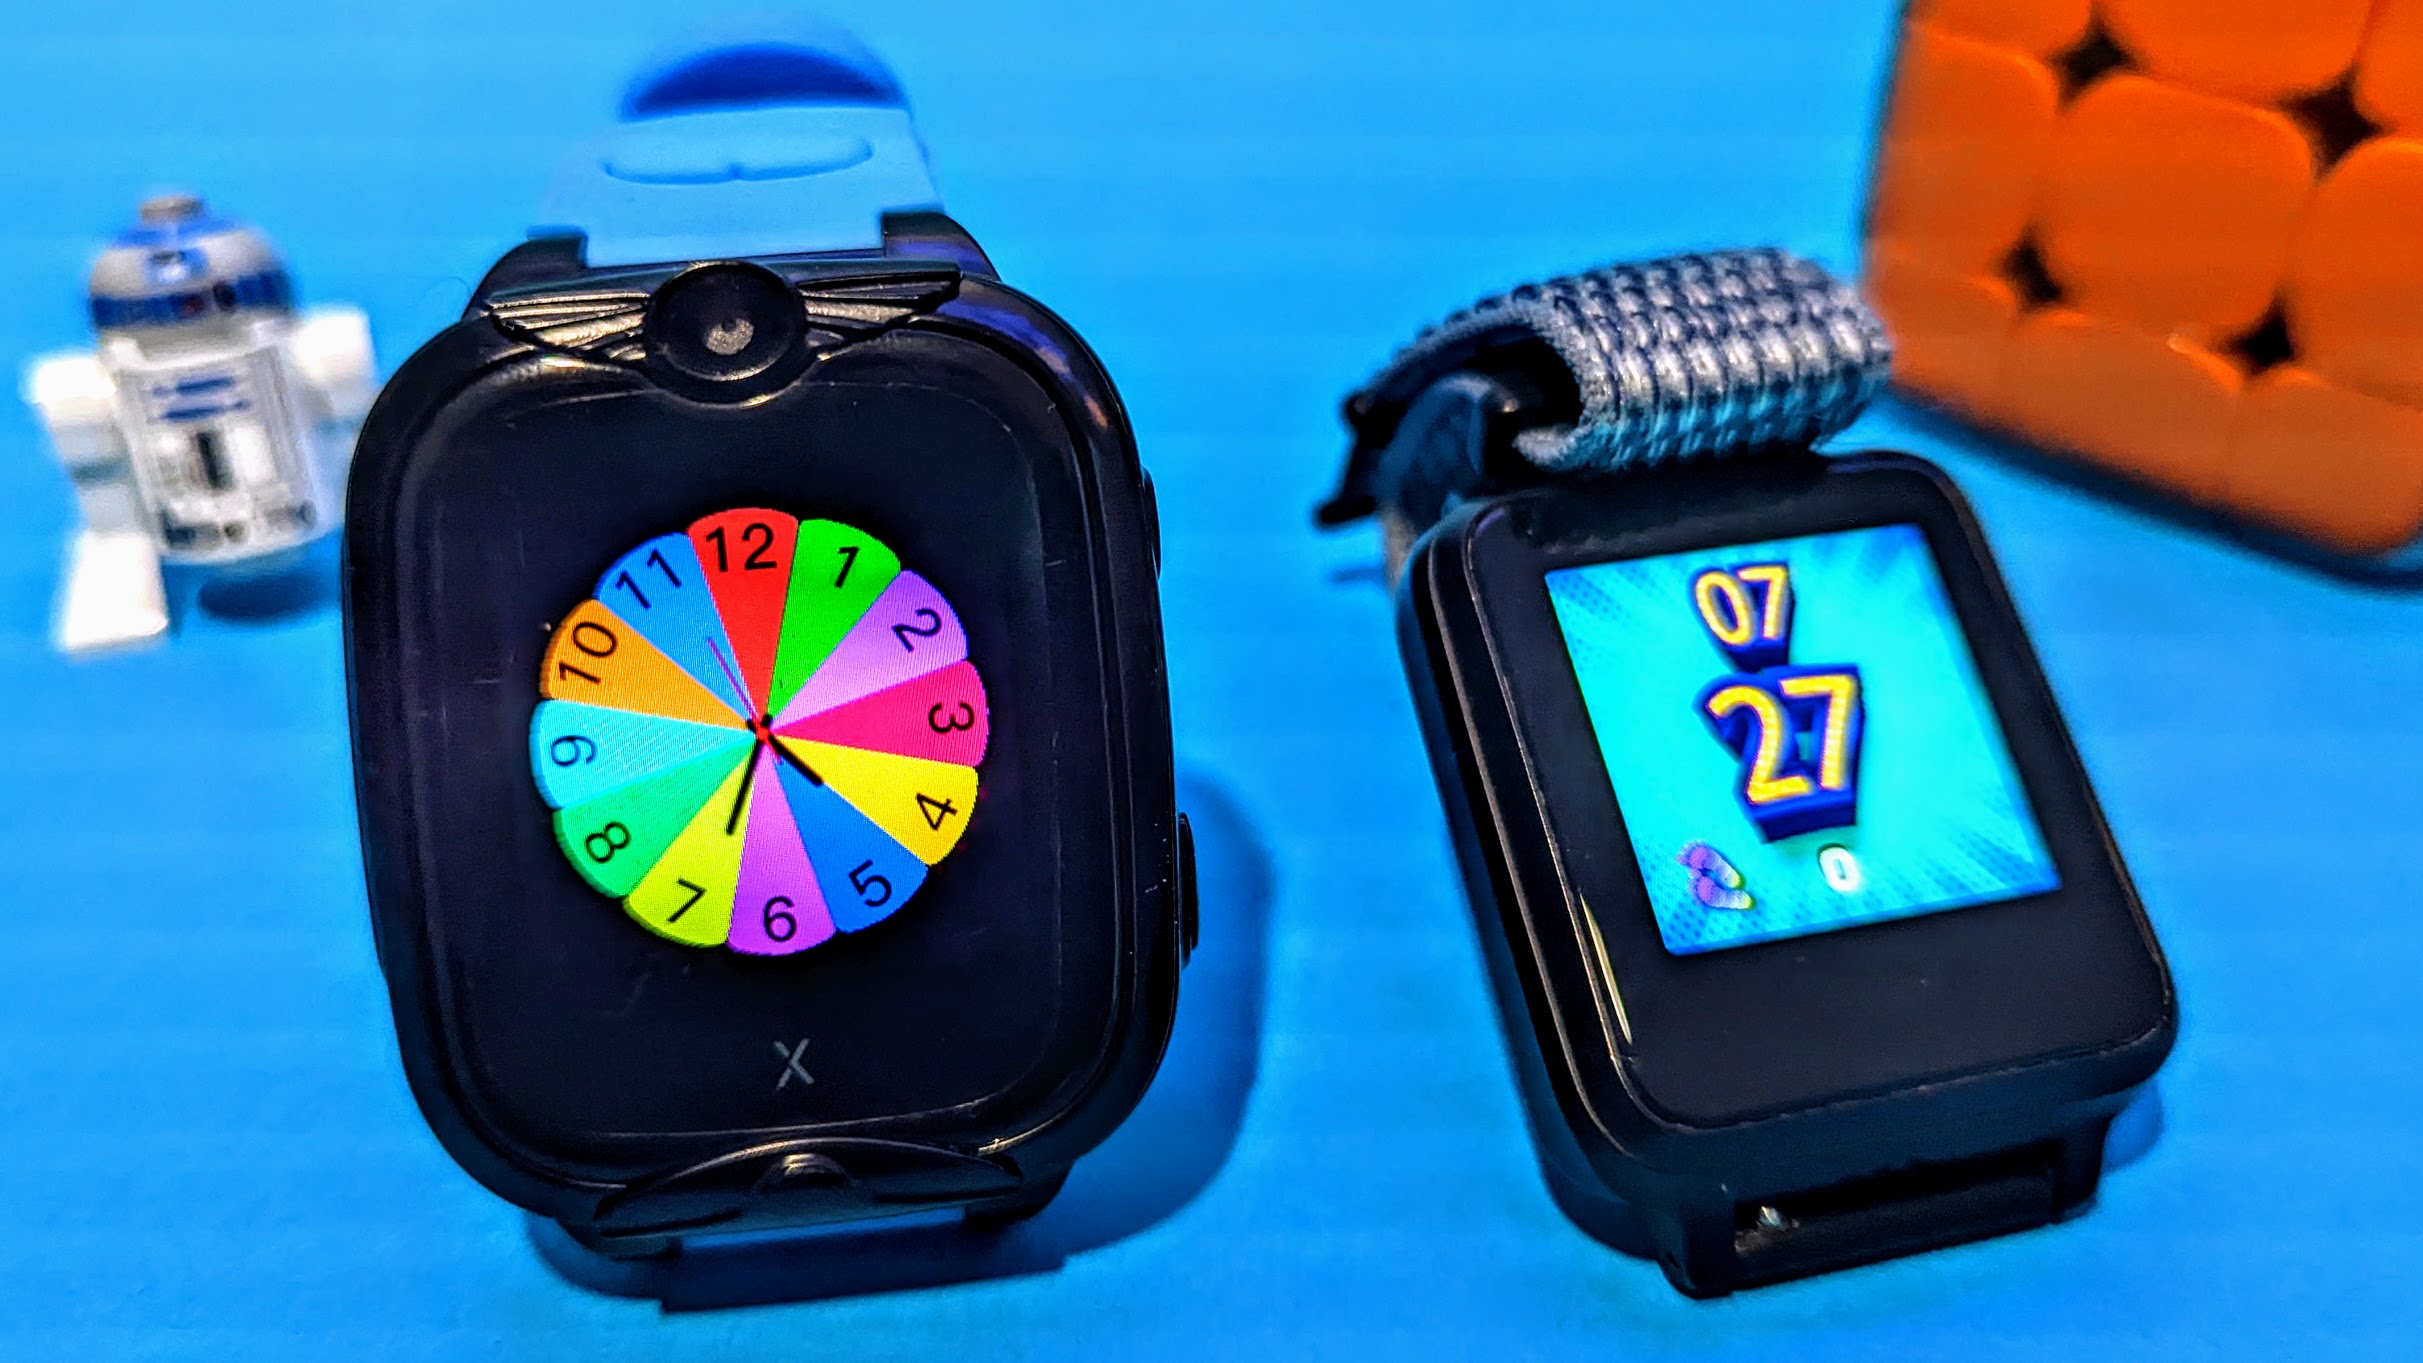 Kinder-Smartwatches mit GPS im Vergleich: Jedes Smartphone ist besser |  TechStage